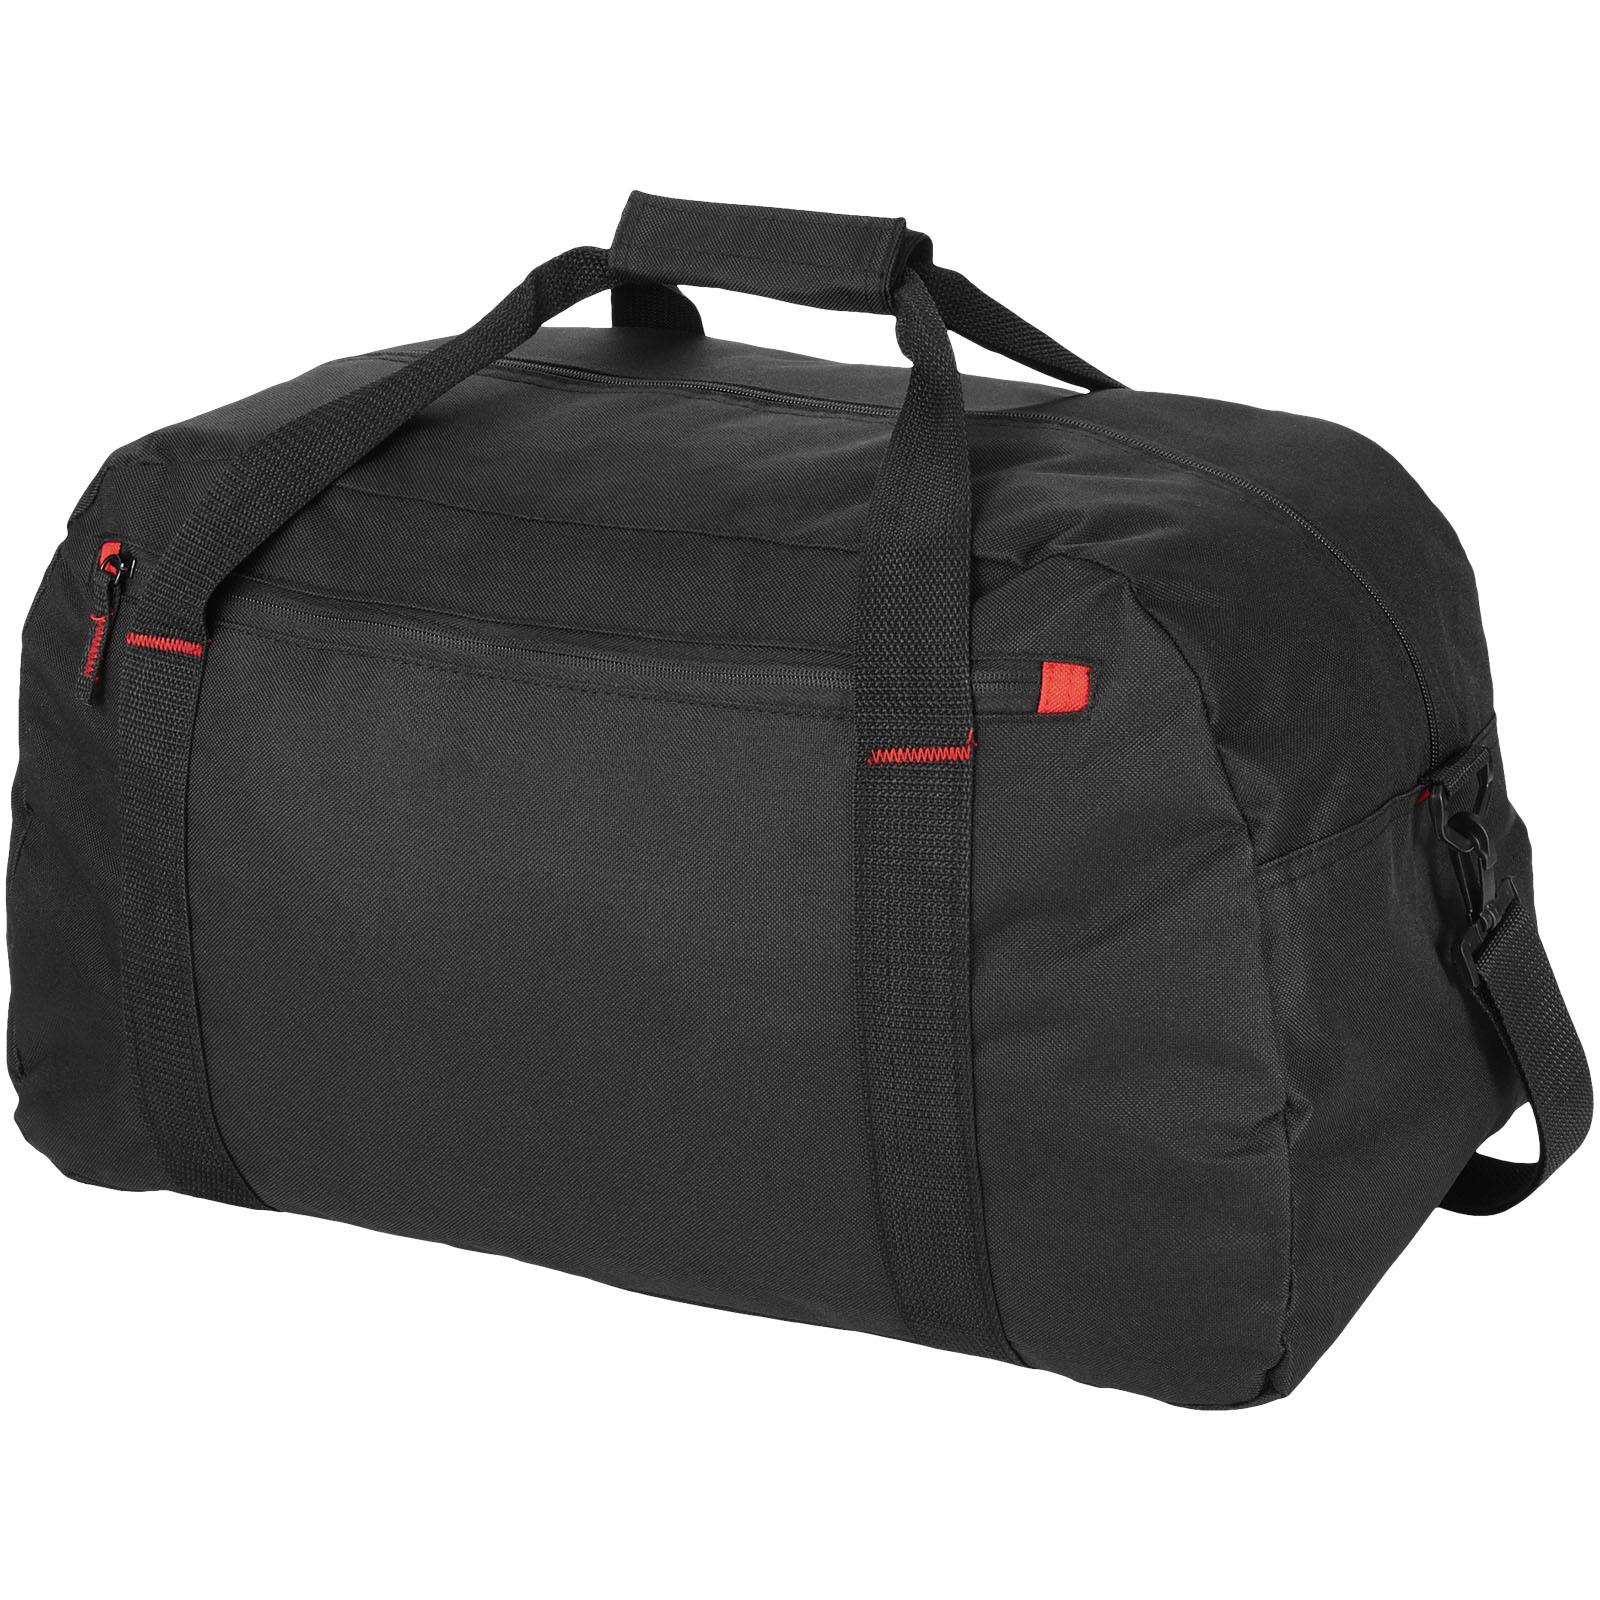 Bags - Vancouver travel duffel bag 35L